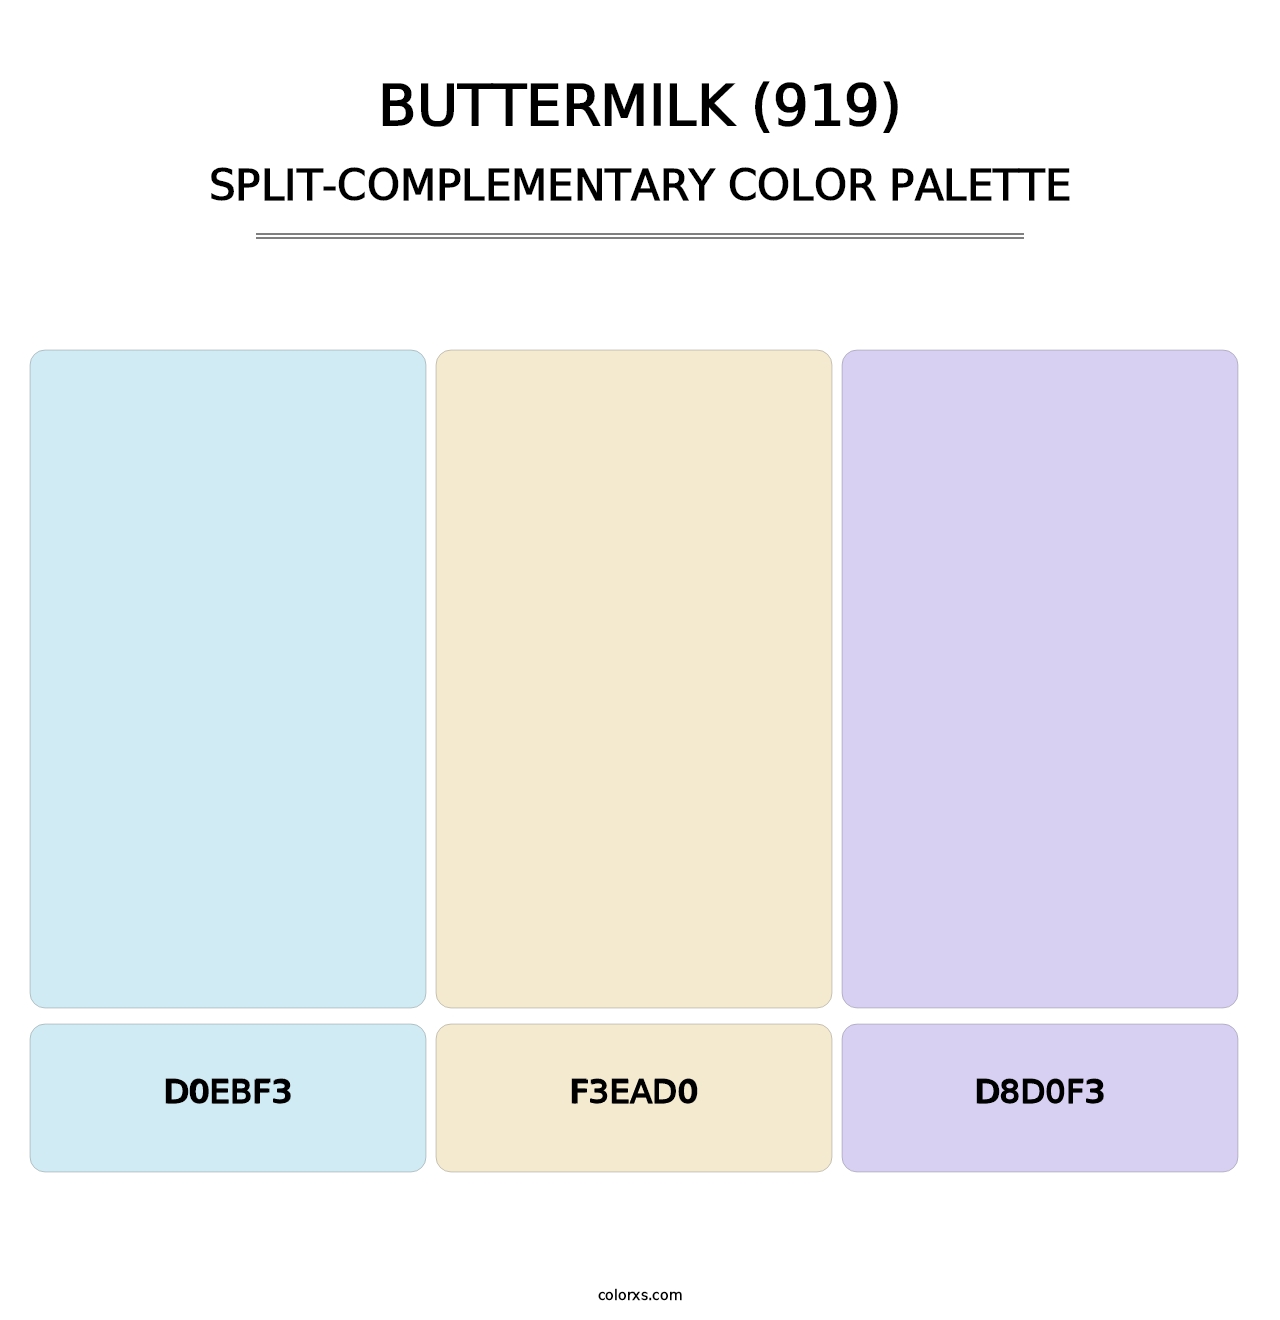 Buttermilk (919) - Split-Complementary Color Palette